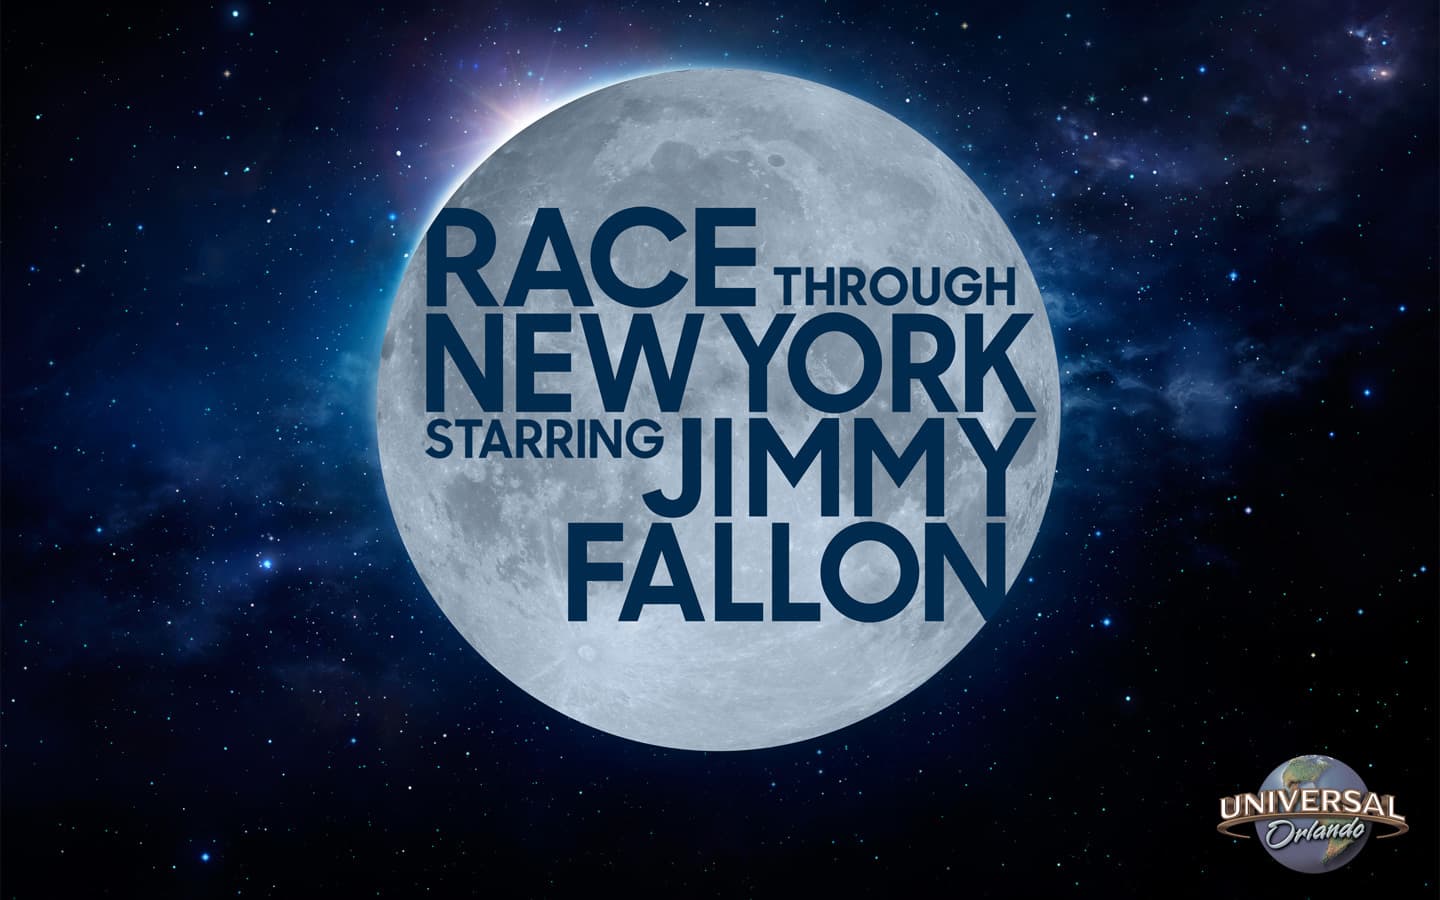 Se publica información sobre las entradas para el rodaje de The Tonight Show Starring Jimmy Fallon en Universal Orlando Resort